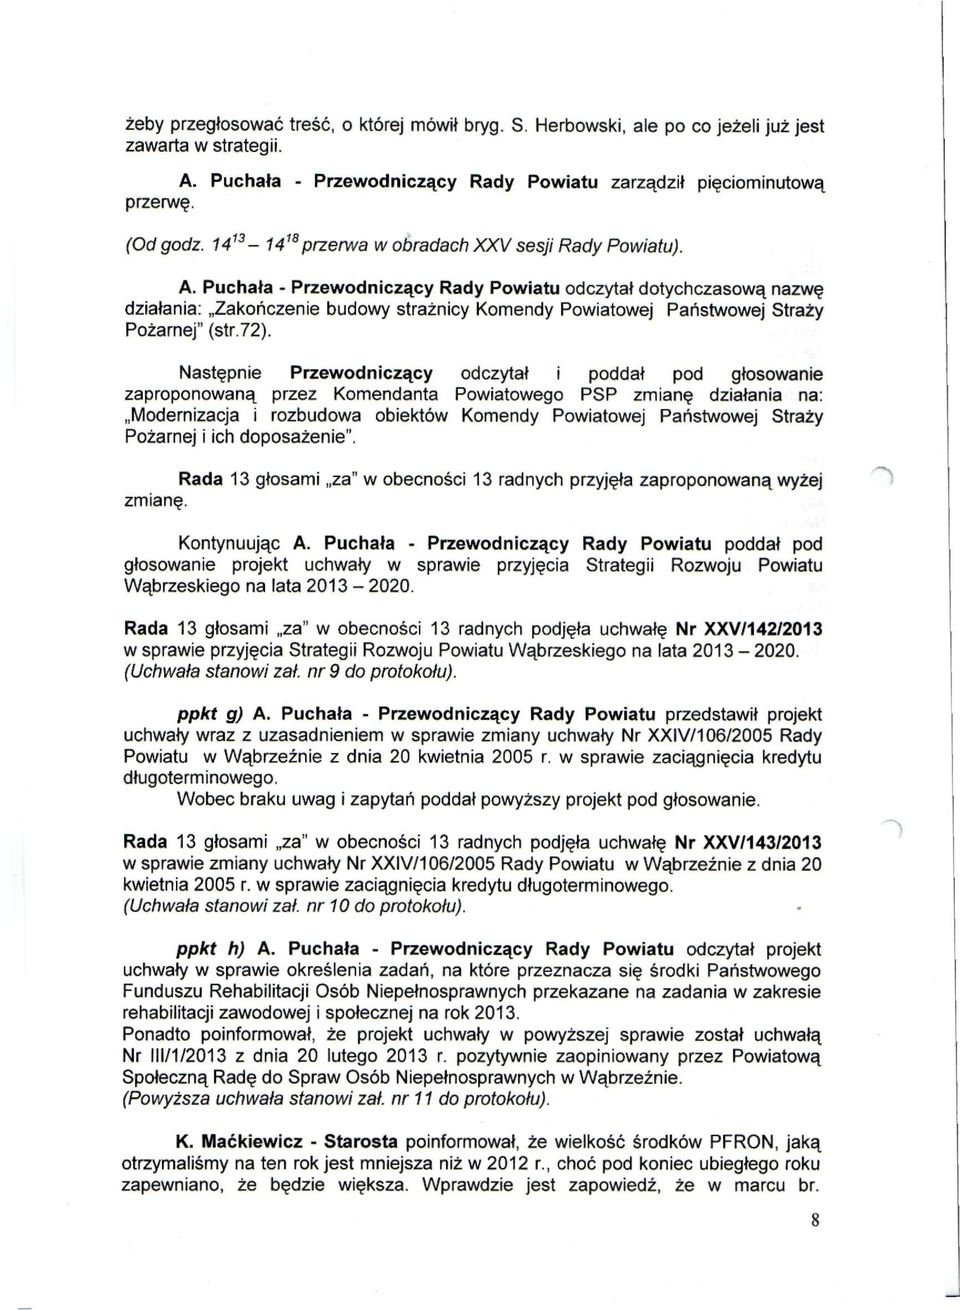 Puchała - Przewodniczący Rady Powiatu odczytał dotychczasową nazwę działania: Zakończenie budowy strażnicy Komendy Powiatowej Państwowej Straży Pożarnej" (str.72).